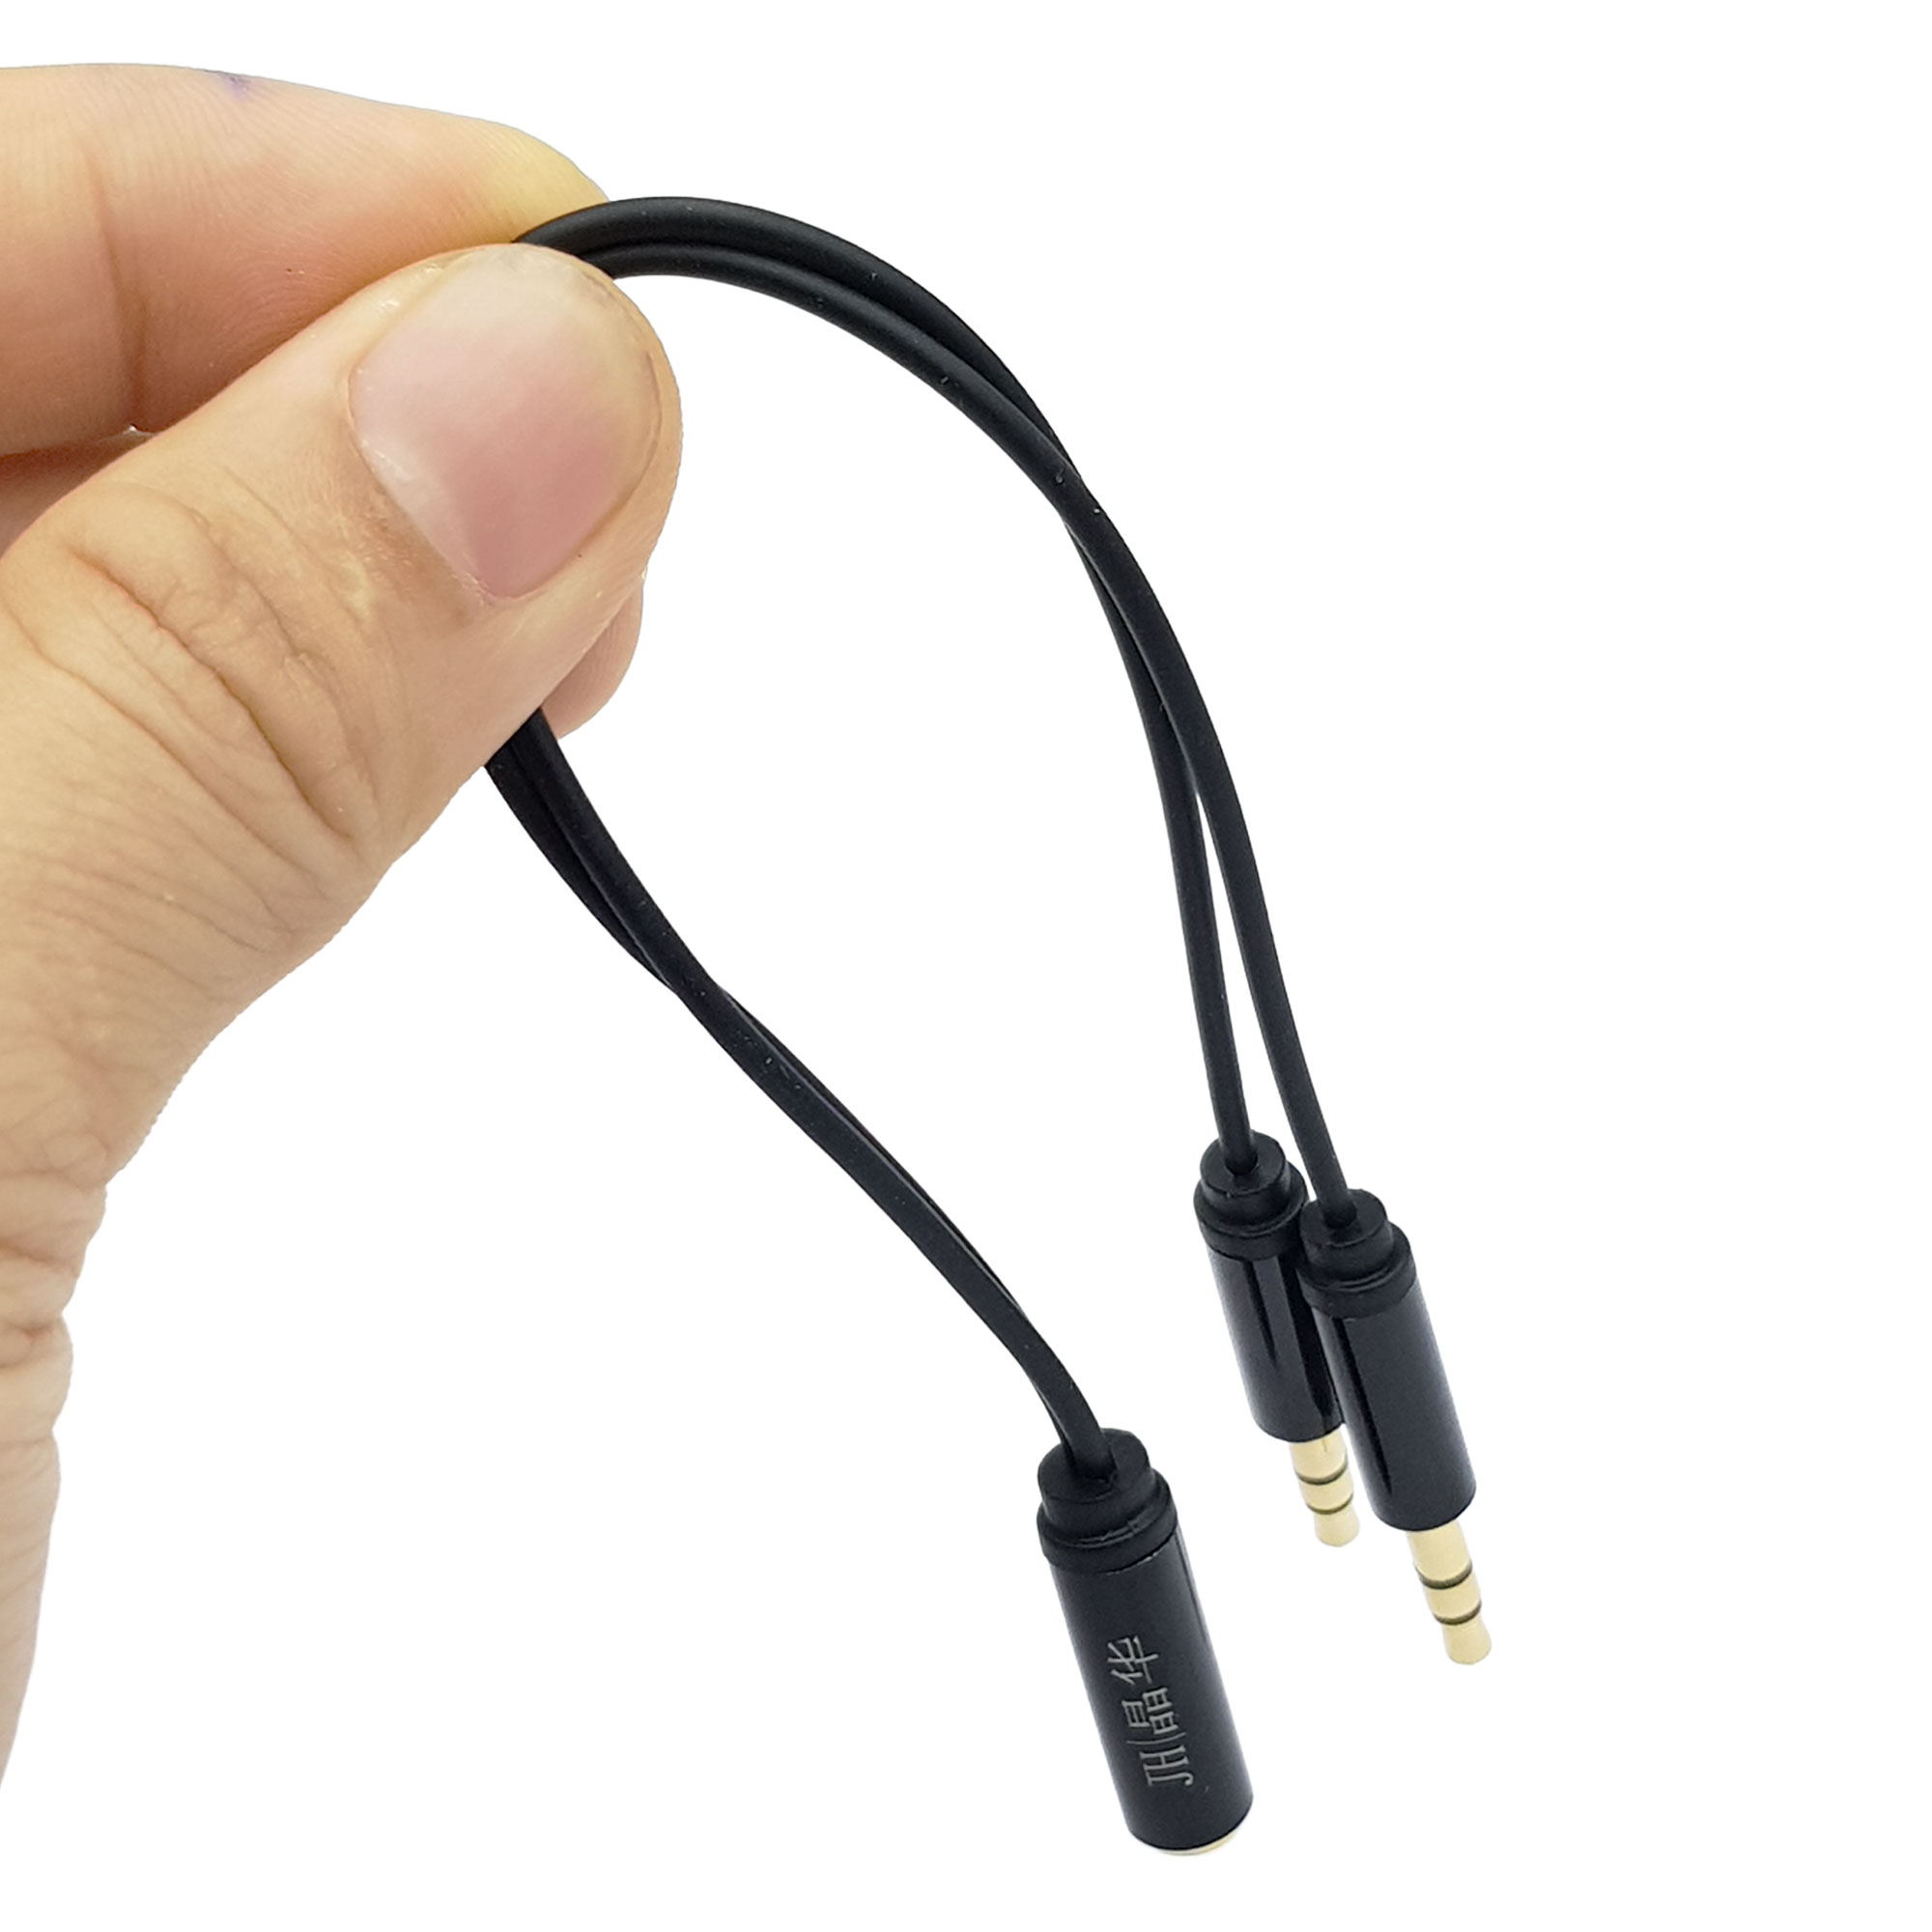 Trên tay dây jack gộp Audio và Mic ra tai nghe 3.5mm